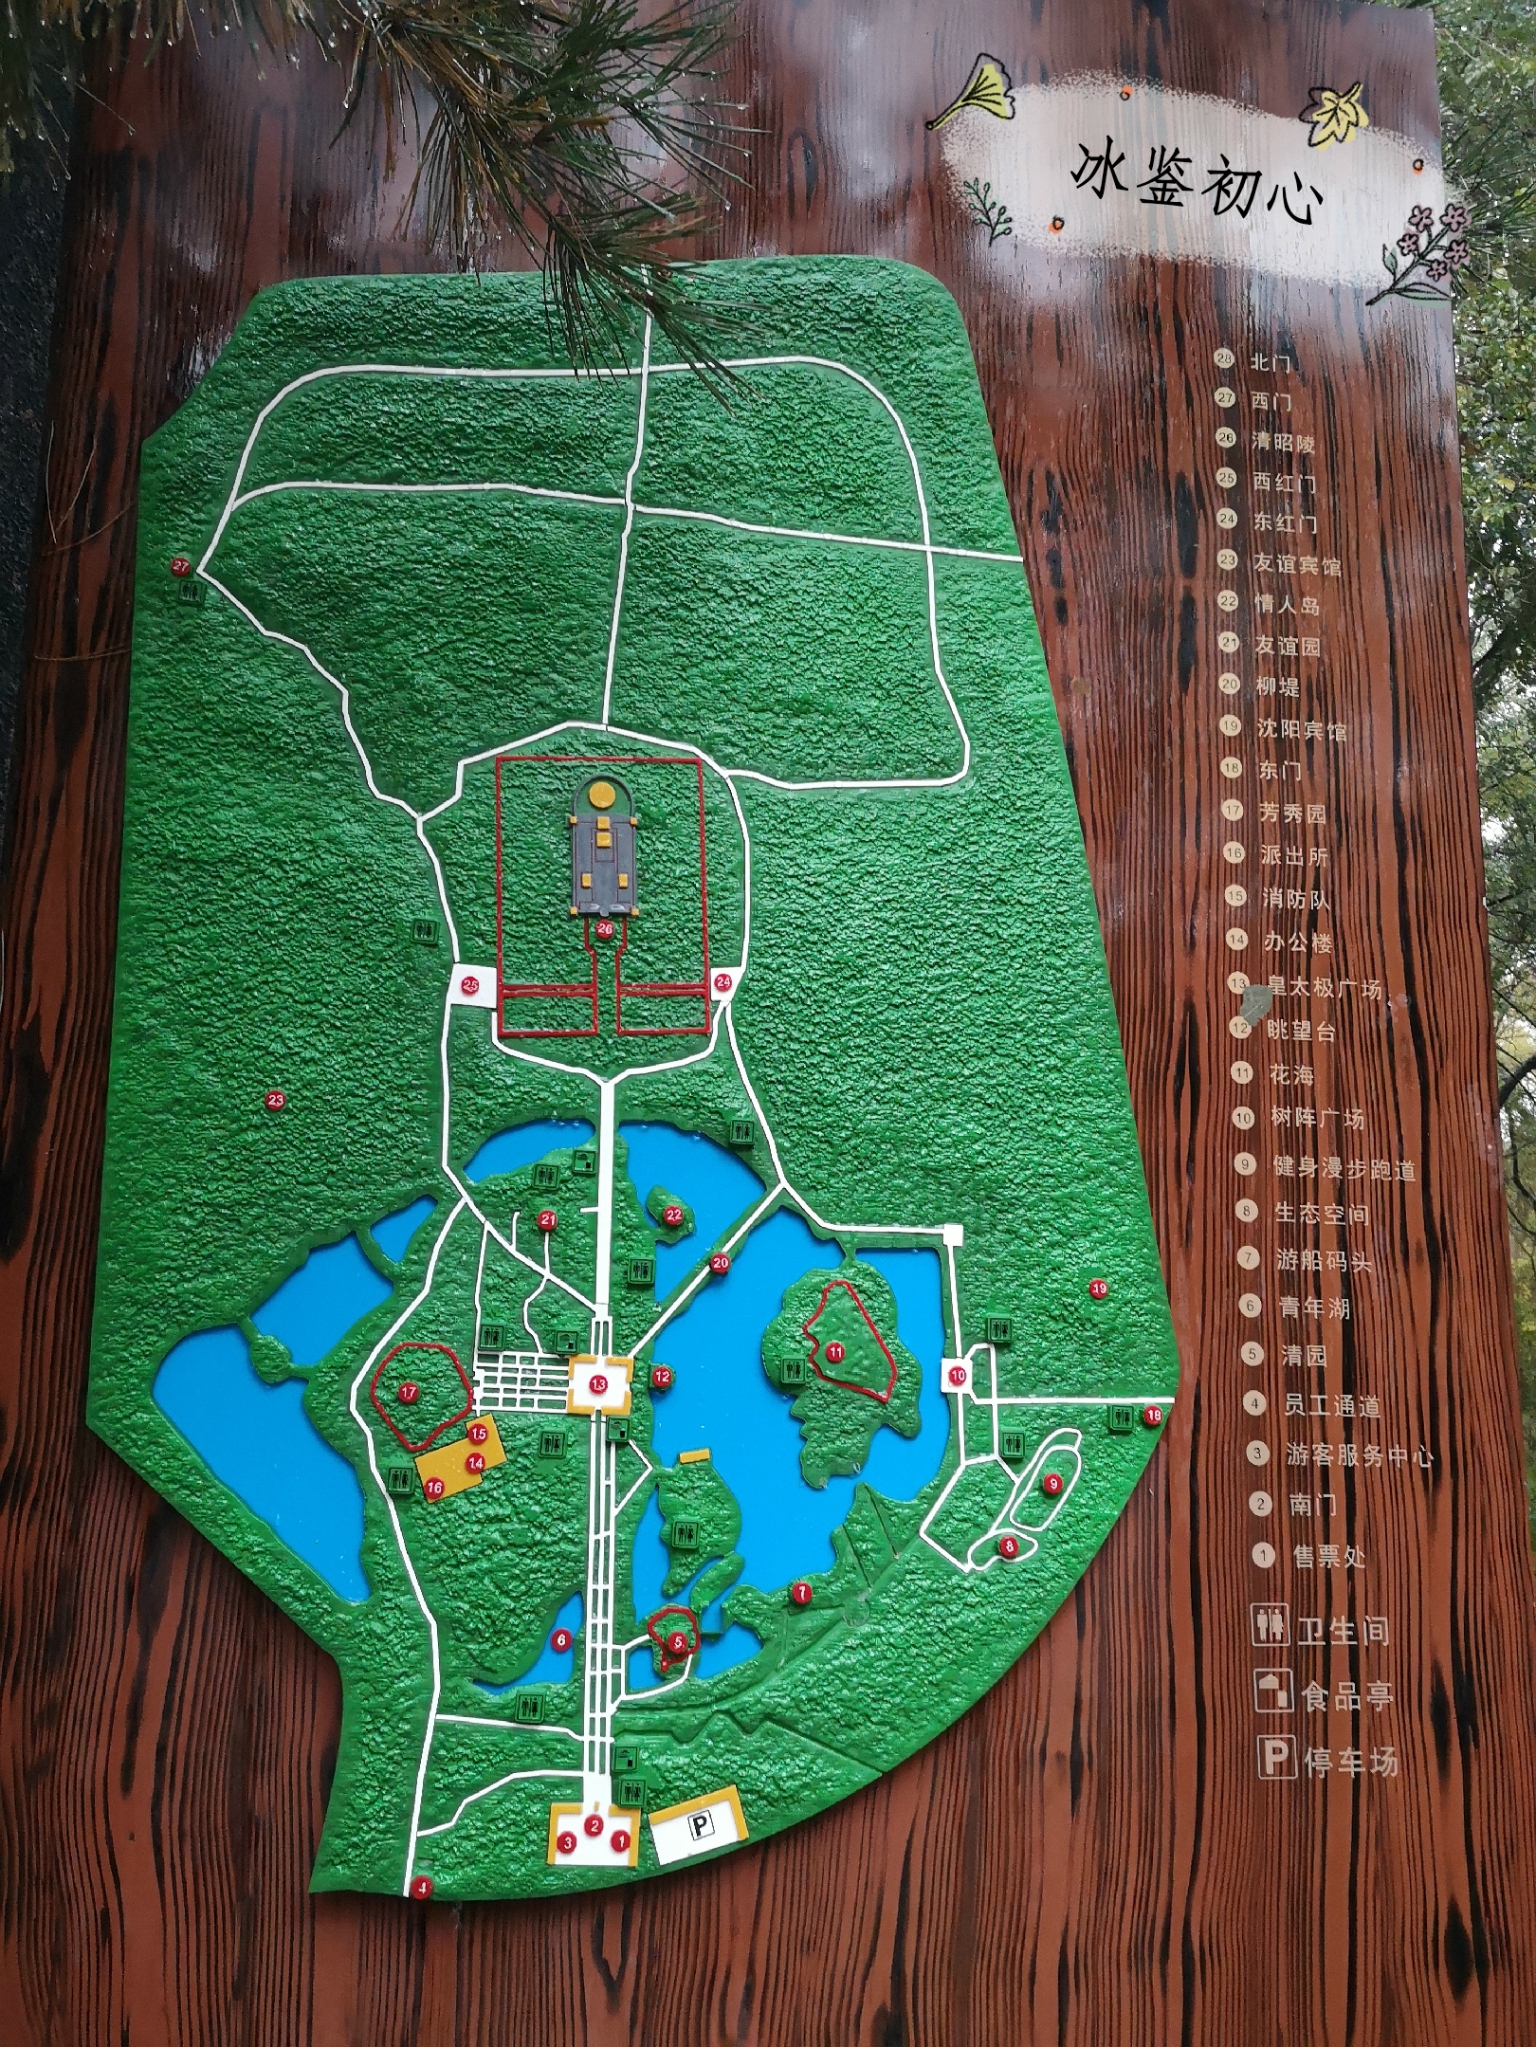 北陵公园地图全景图片